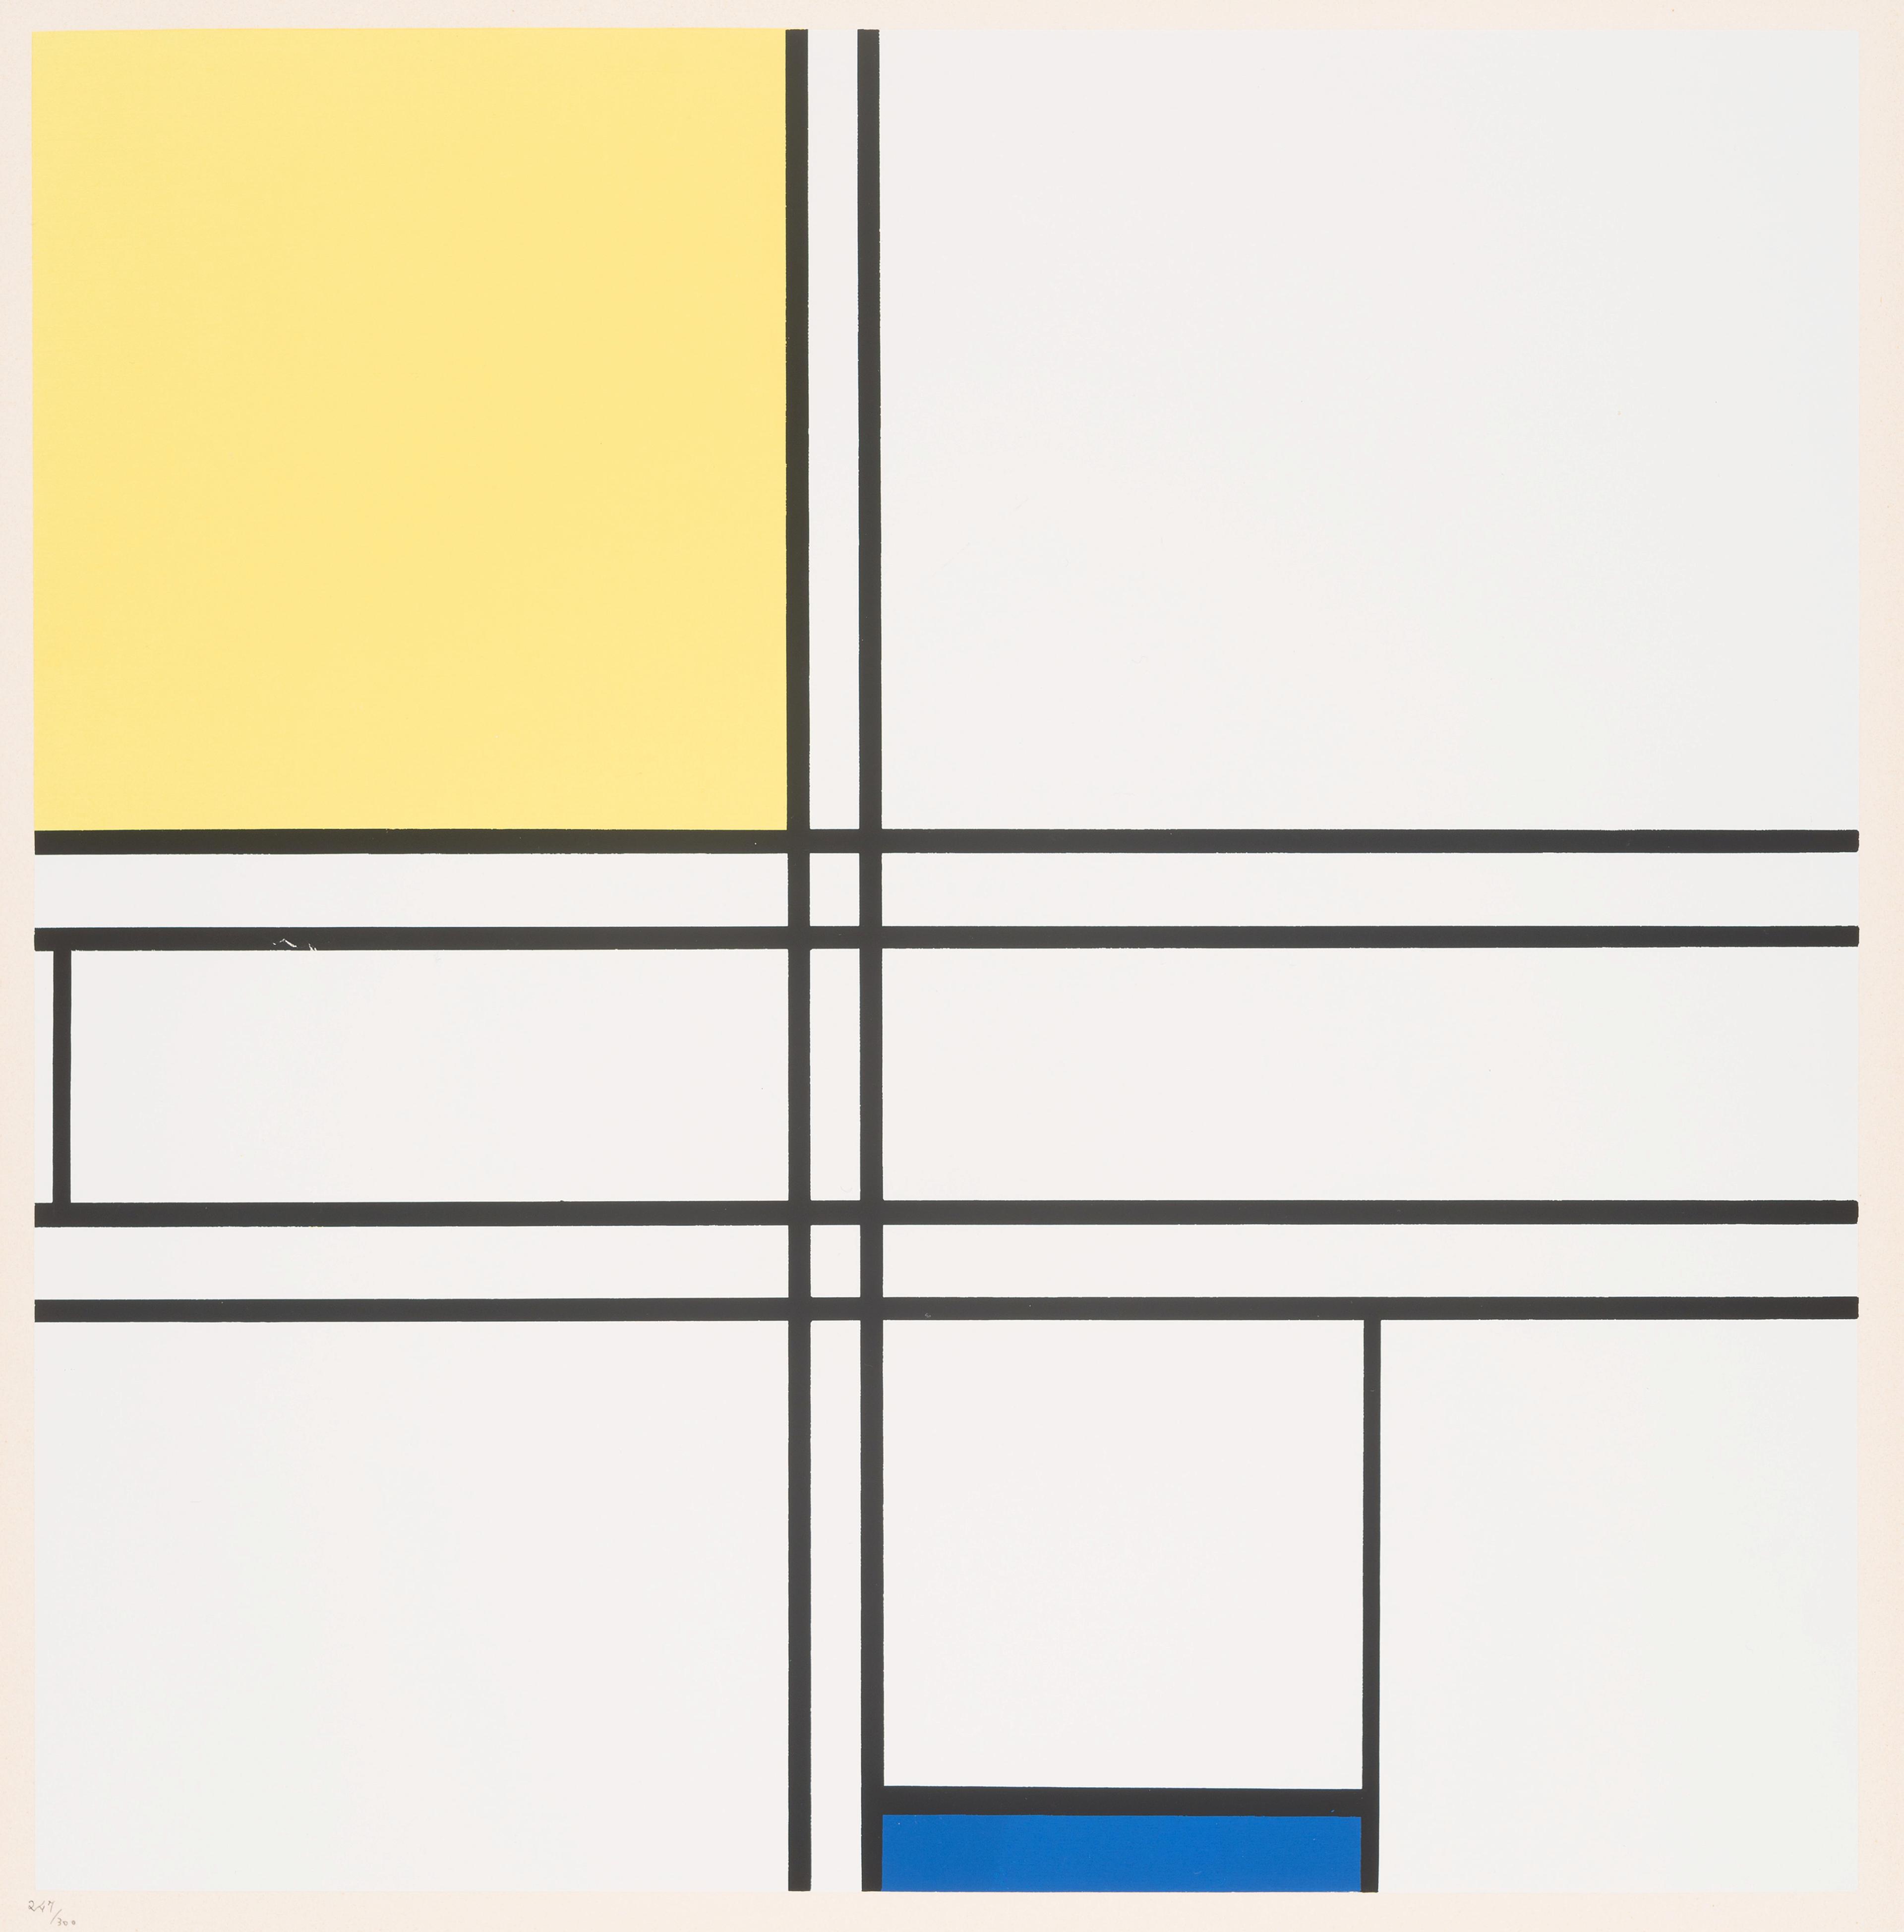 Et abstrakt motiv av Piet Mondrian, som viser sorte linjer mot hvit bakgrunn, med felt i gult og blått